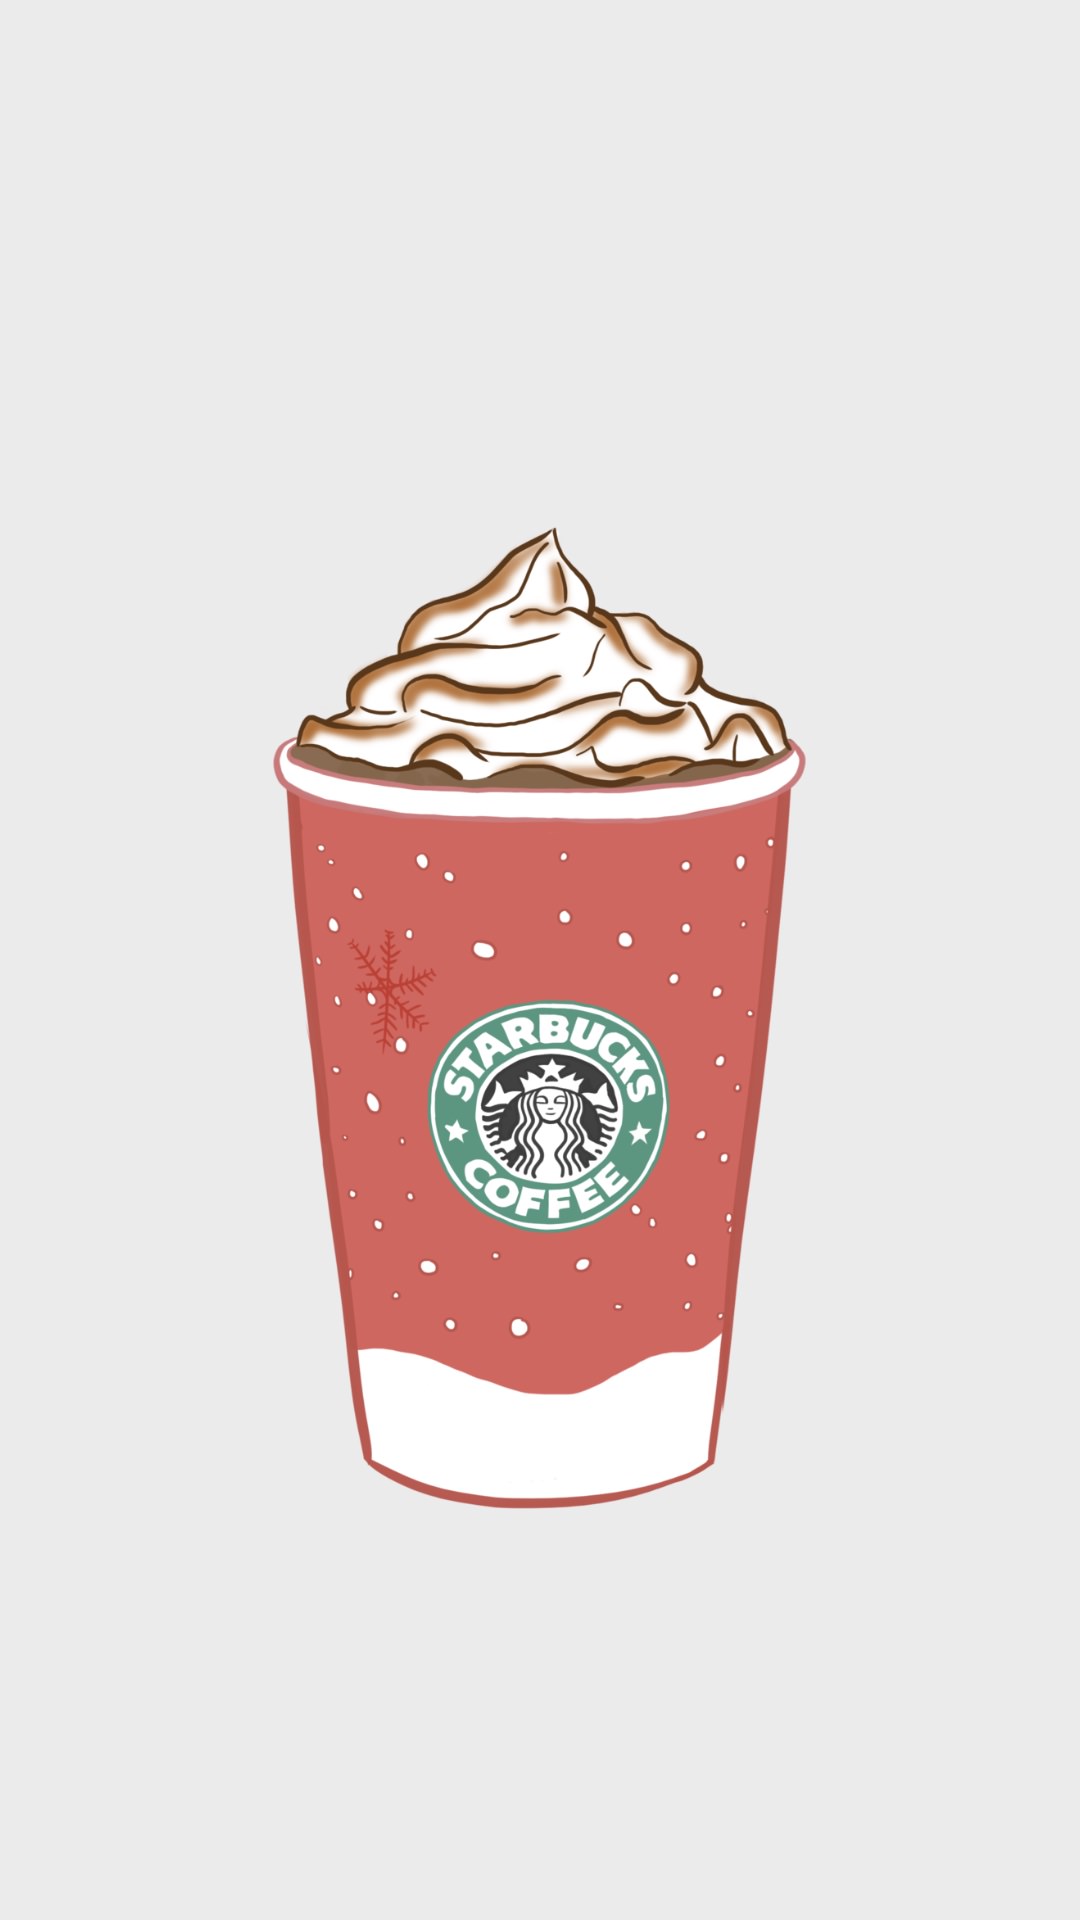 スターバックスコーヒー Starbucks Coffeeのおしゃれな 高画質スマホ壁紙25枚 Iphone Androidに対応 エモい スマホ壁紙辞典